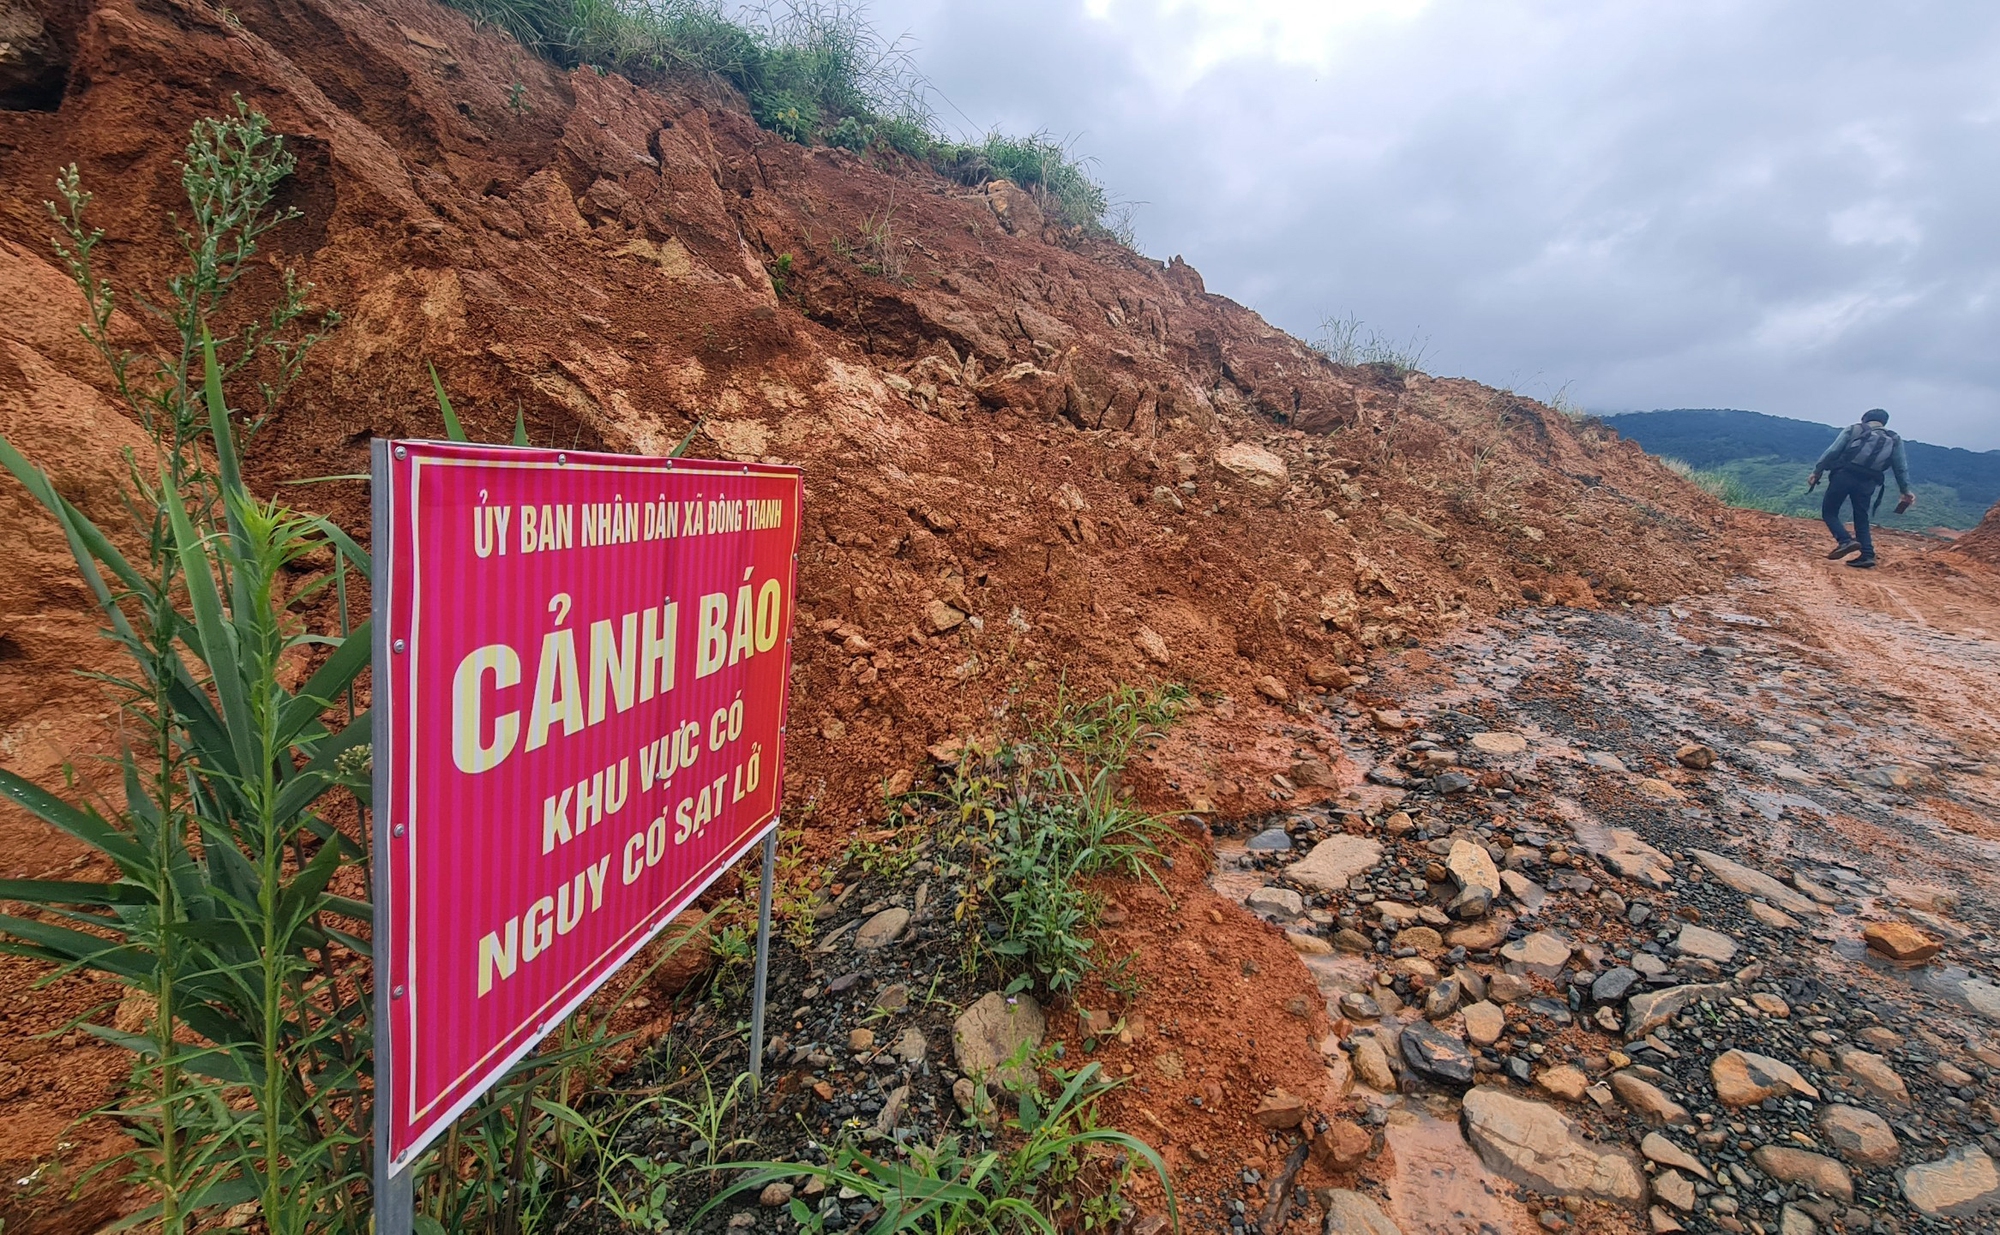 Lâm Đồng: Nhiều vết nứt vừa xuất hiện tại dự án hồ chứa nước 500 tỉ đồng - Ảnh 3.